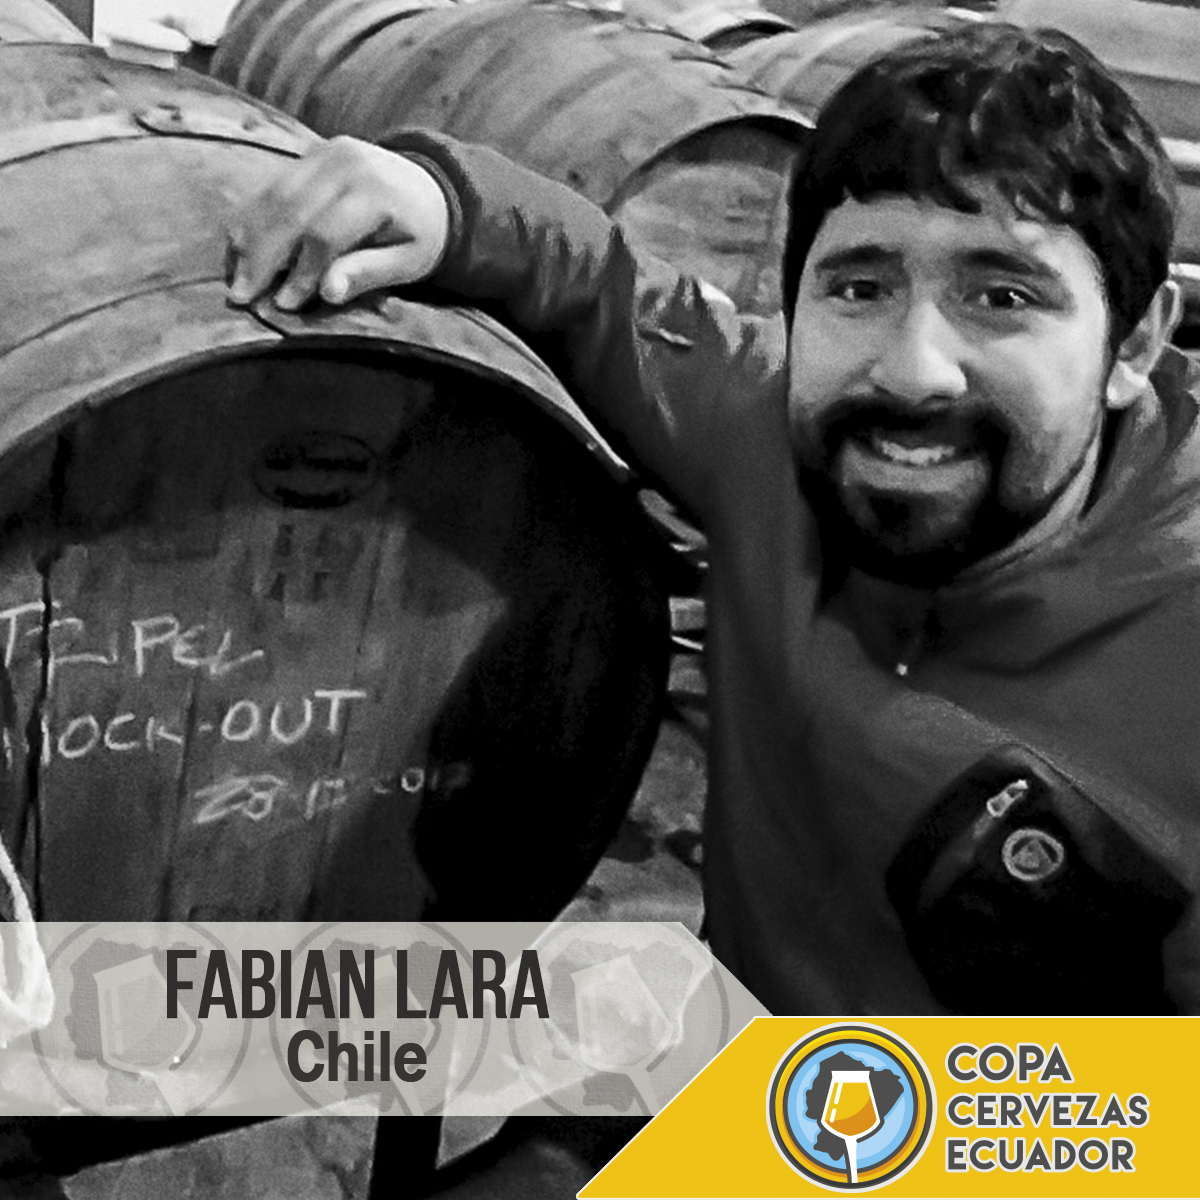 Fabián Lara. Chile